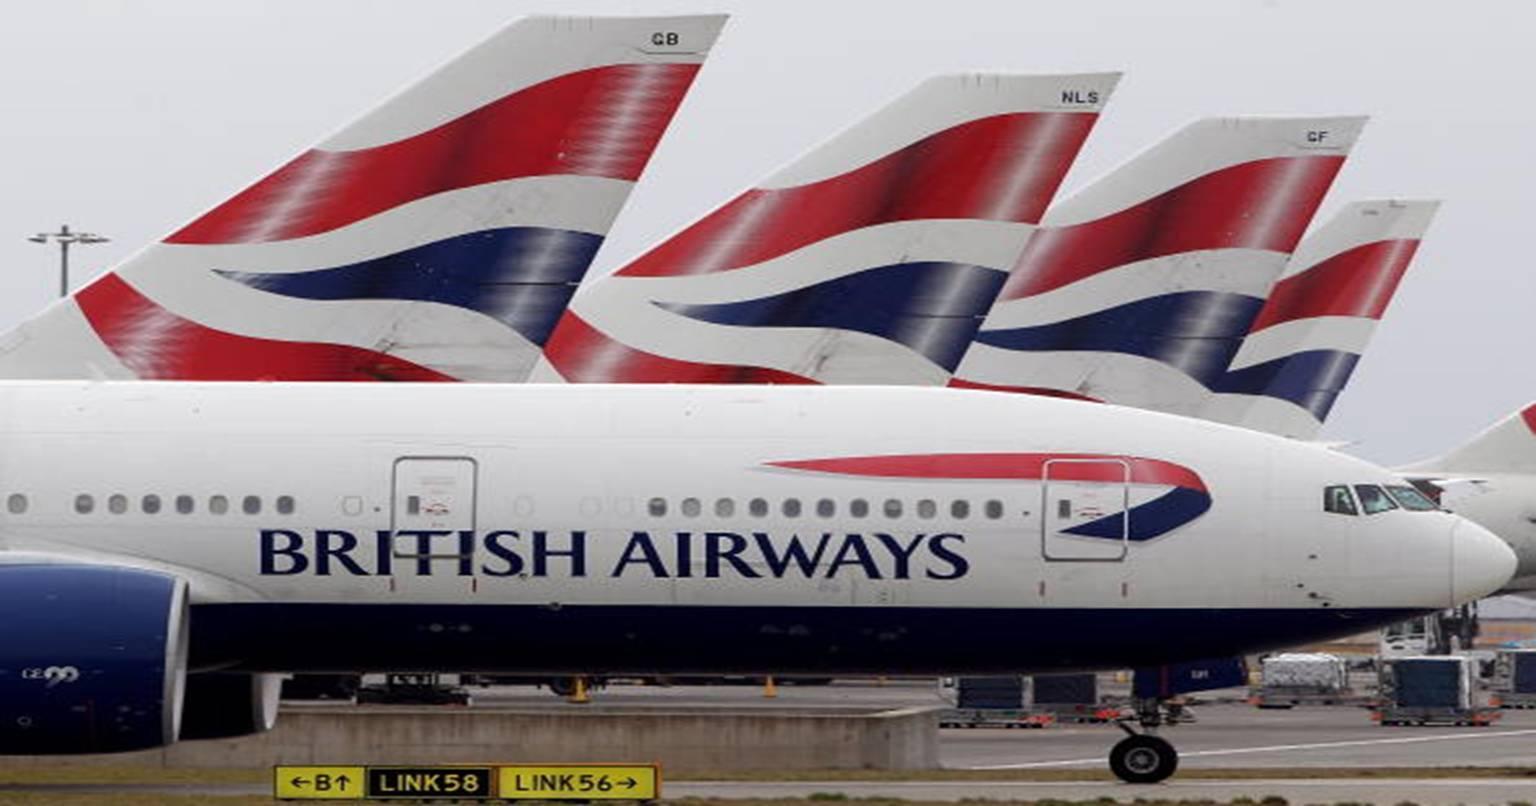 ब्रिटिश एयरवेज रखेगा आपकी खुशी का ख्याल, सफर के दौरान देगा “खुशी वाली गोली”